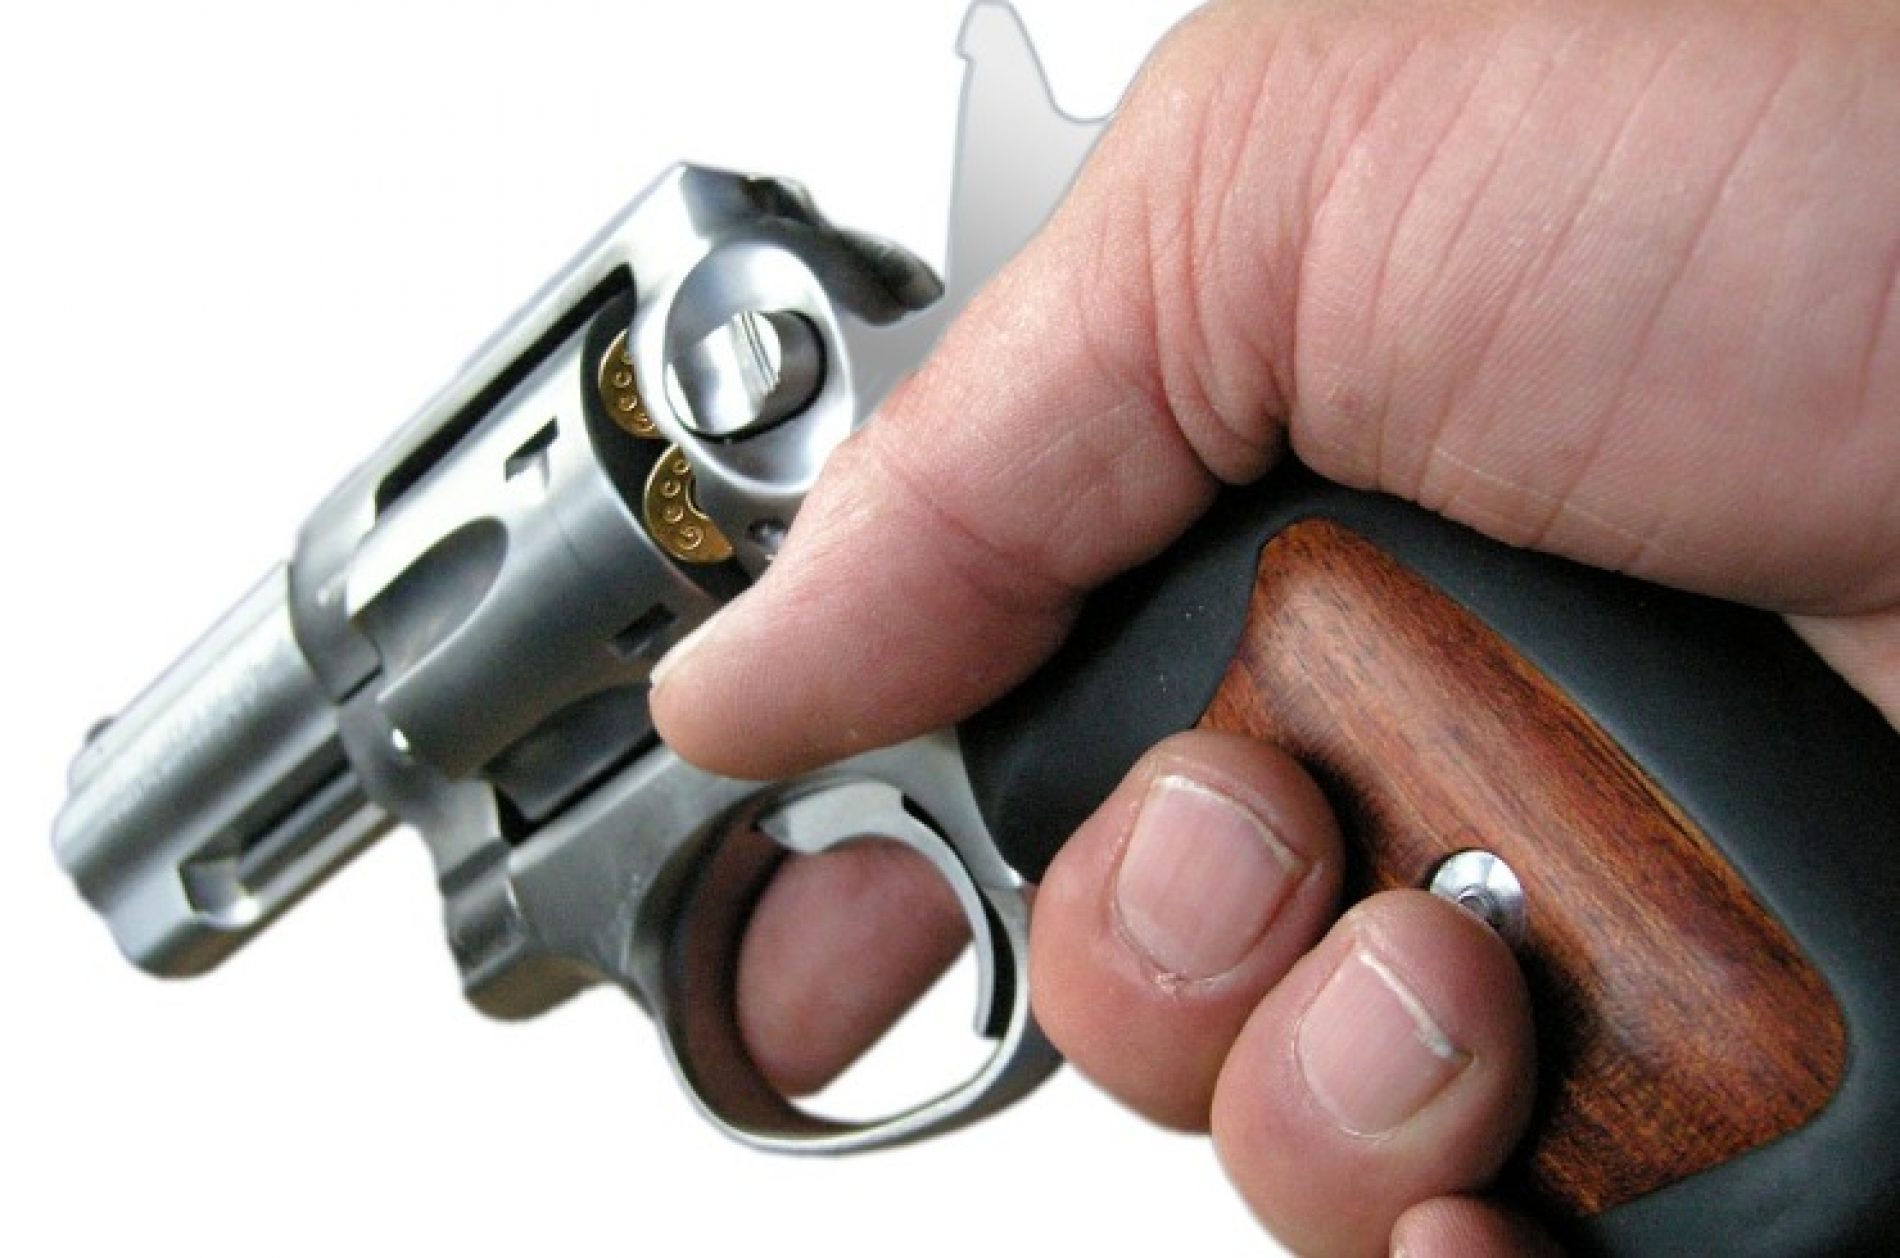 BARRETOS: Testemunhas afirmam que Policial Civil efetuou disparos de arma de fogo contra eles durante pescaria